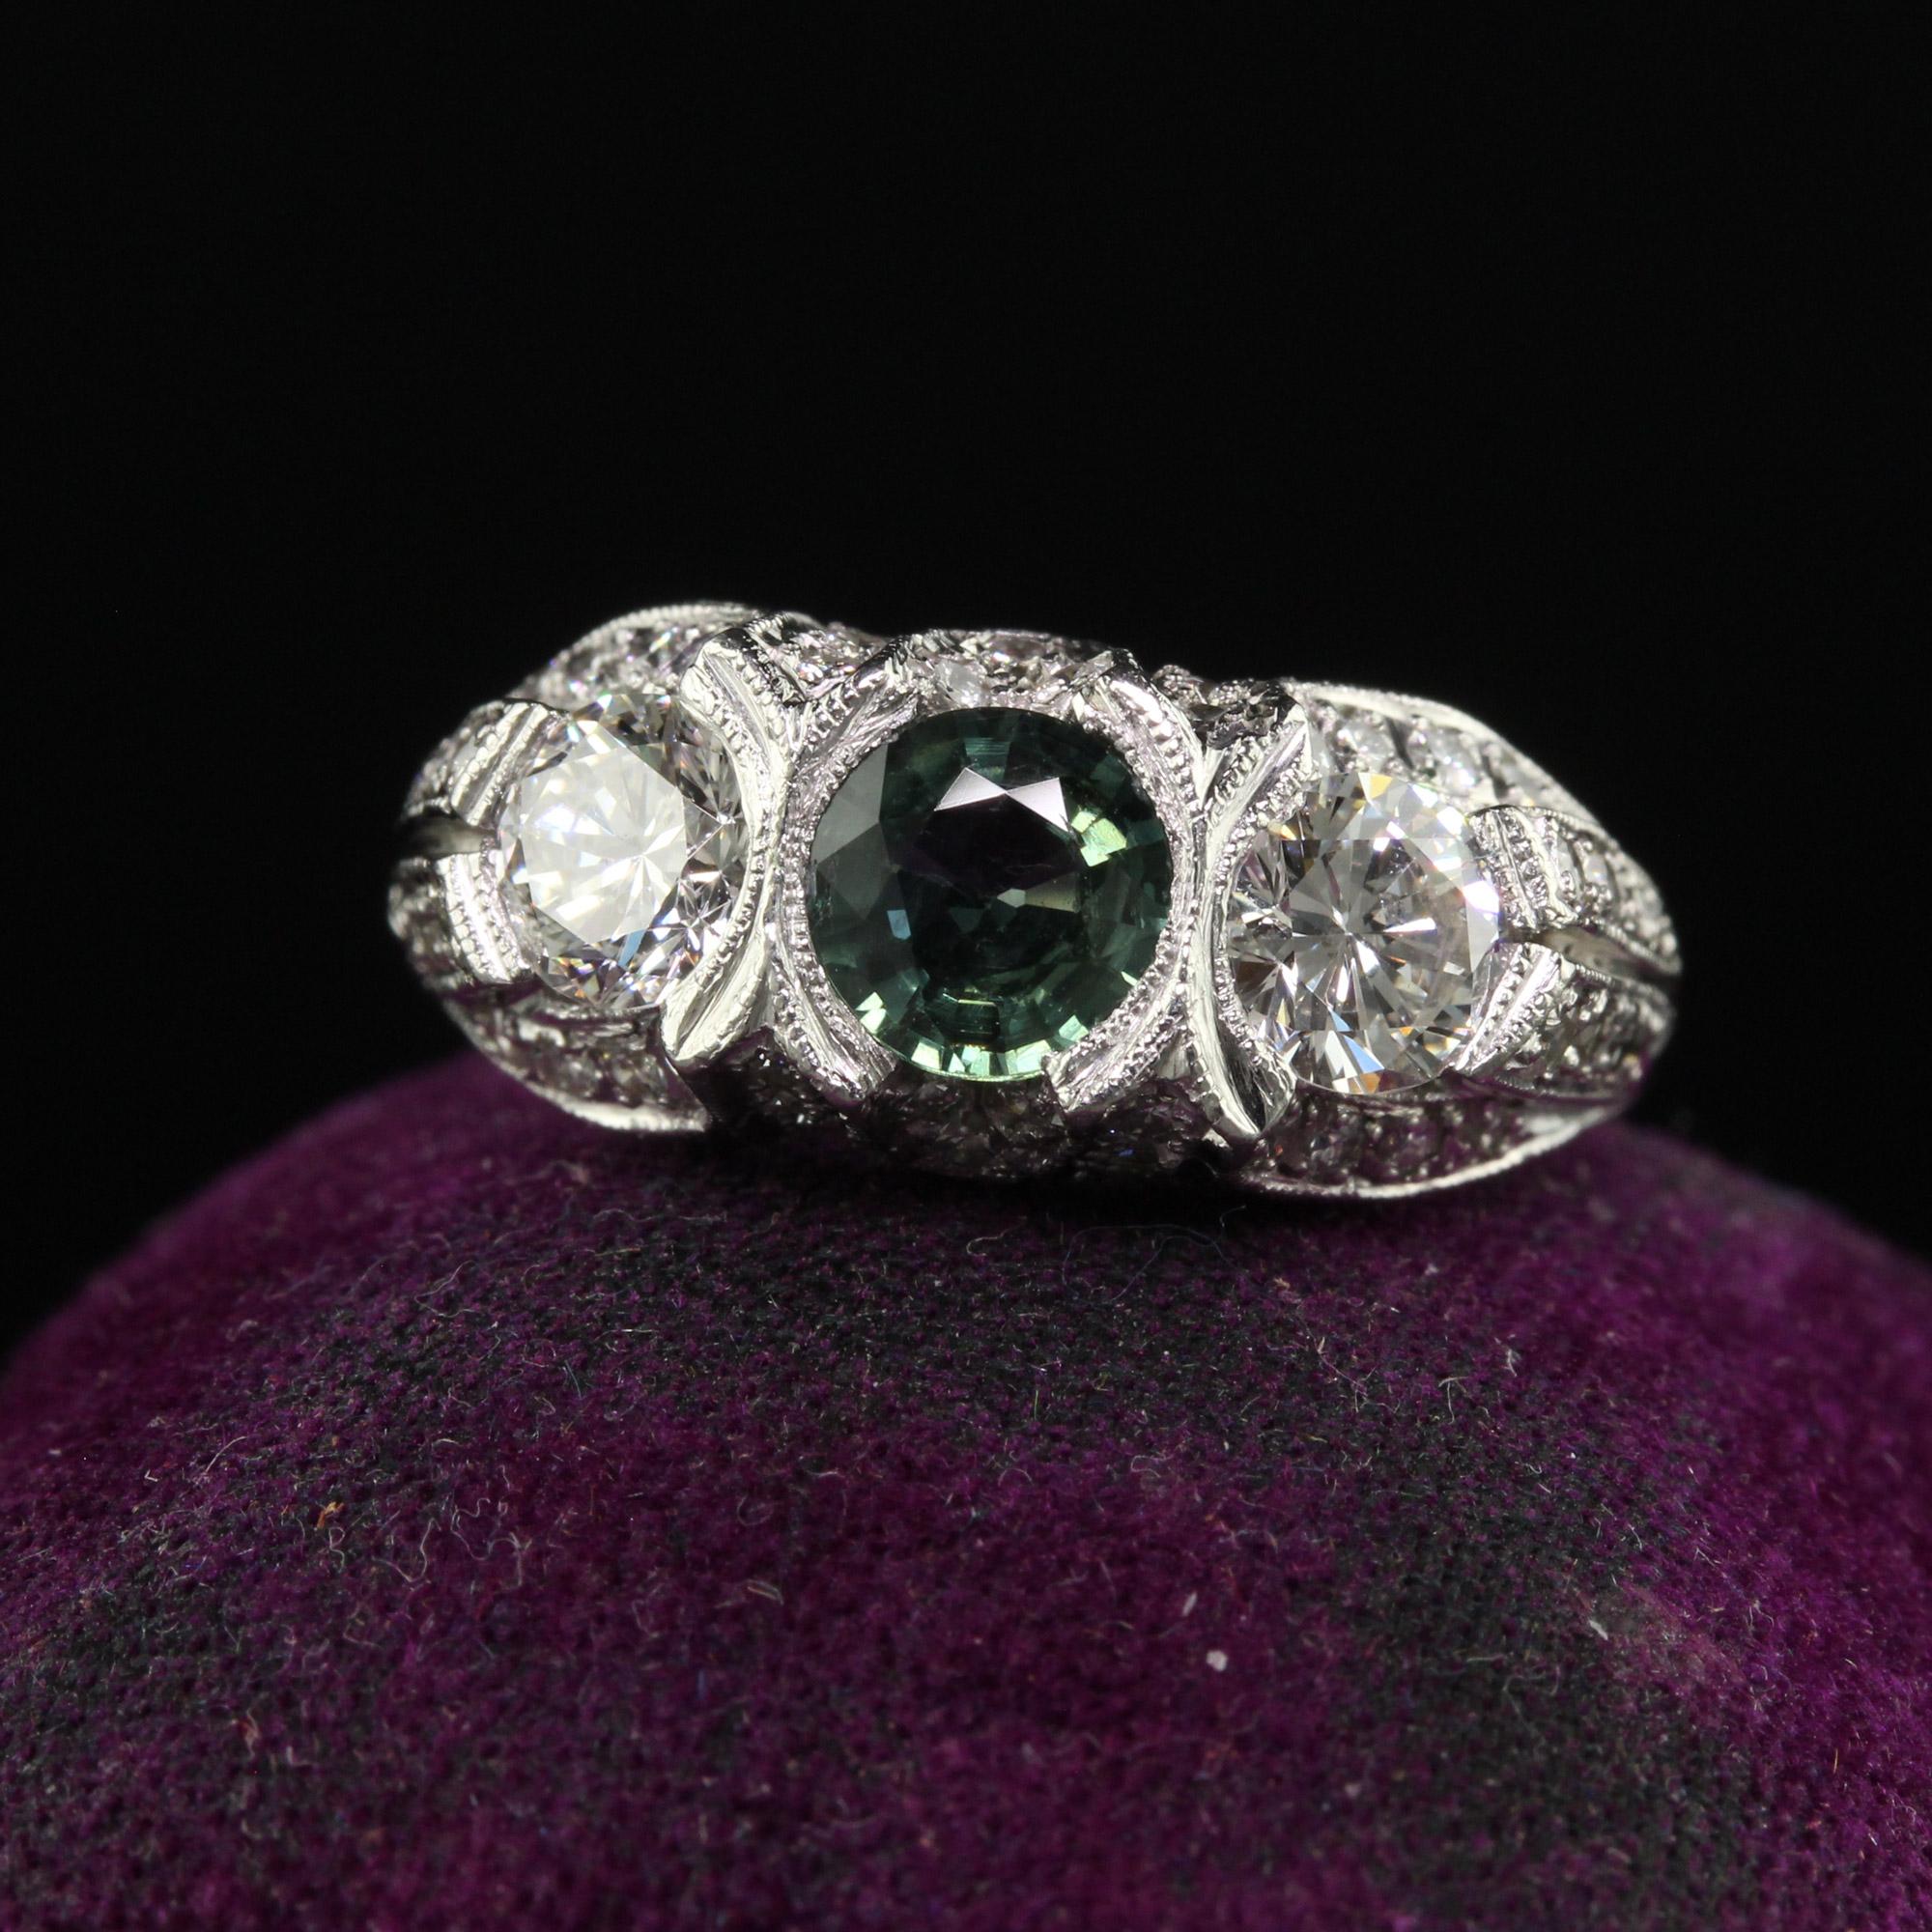 Schöne Vintage Estate Retro Platin Diamant und grüner Saphir Drei Stein Ring. Dieser schöne Retro-Ring mit drei Steinen ist aus Platin gefertigt. Der obere Teil des Rings besteht aus zwei Diamanten im Übergangsschliff und einem natürlichen grünen